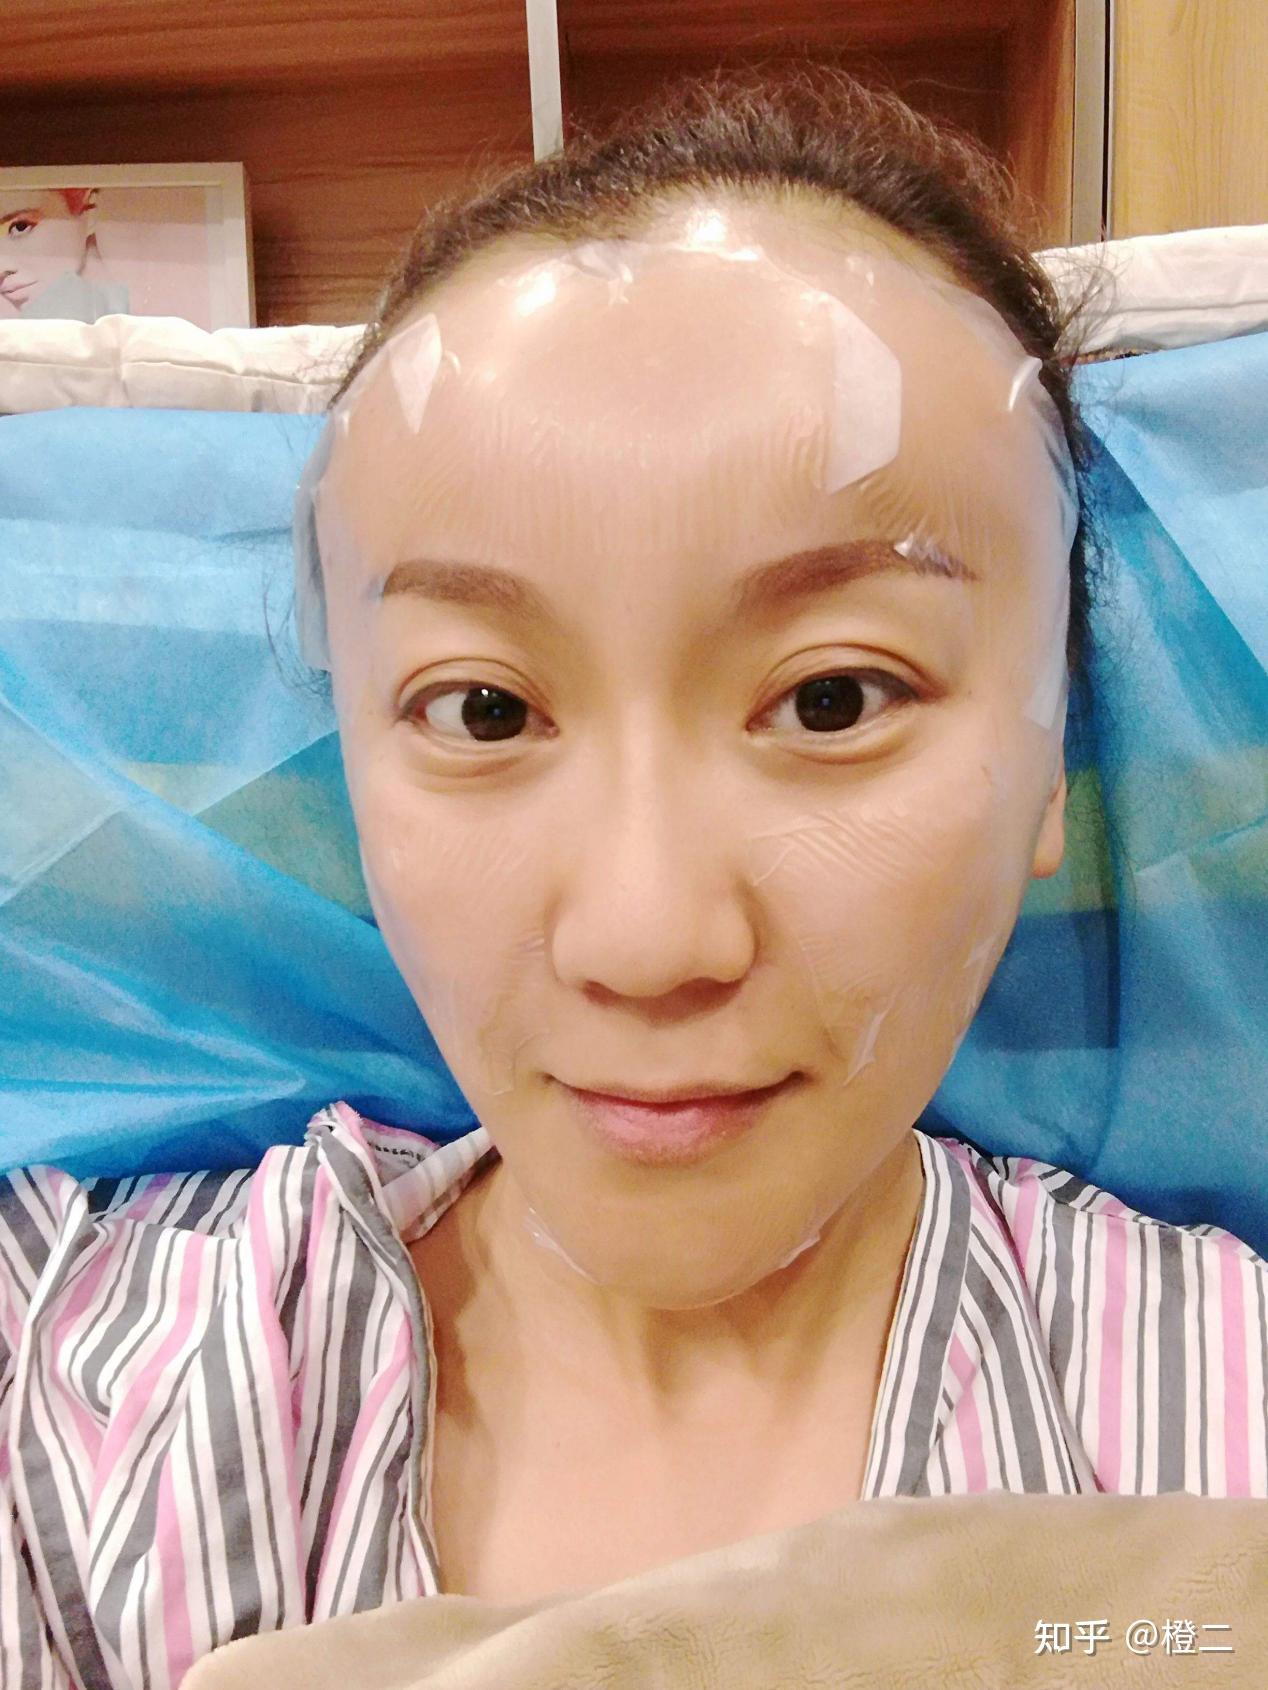 面部凹陷不平，在北京有哪些医生做面部填充靠谱？ - 知乎